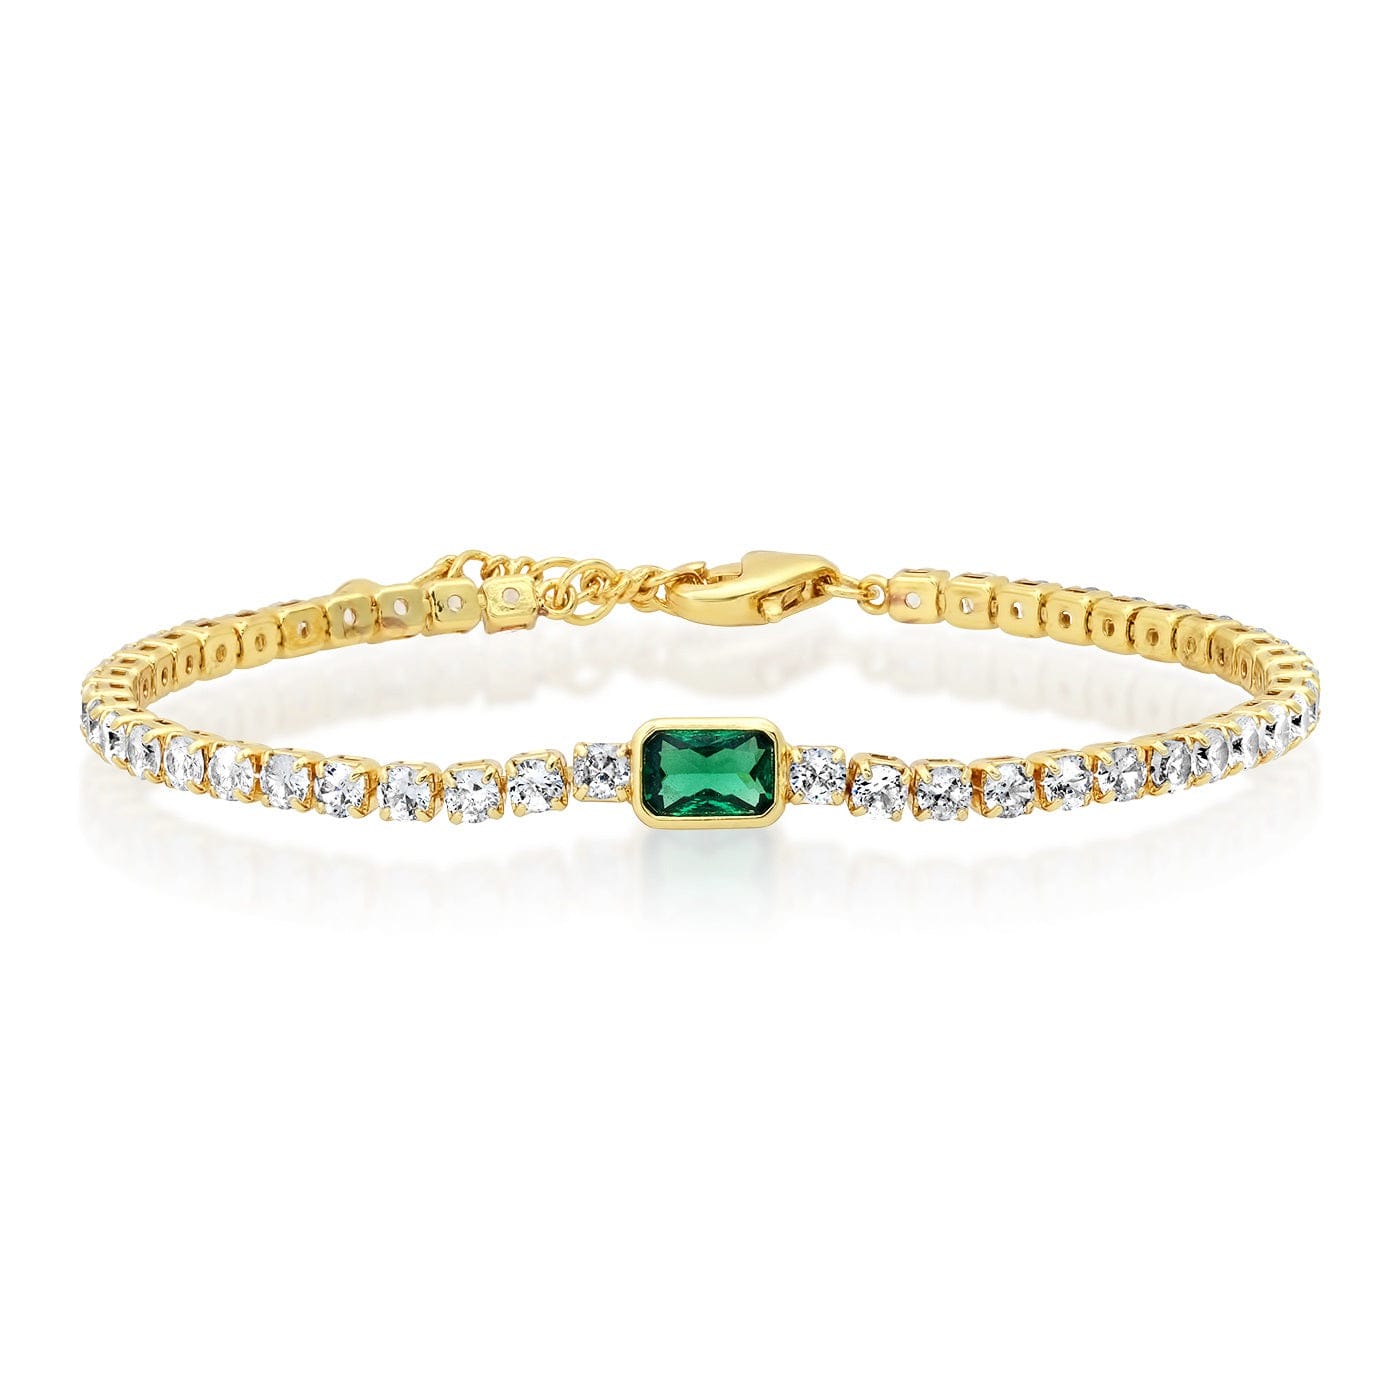 TAI JEWELRY Bracelet Green Tennis Bracelet With Center Stone